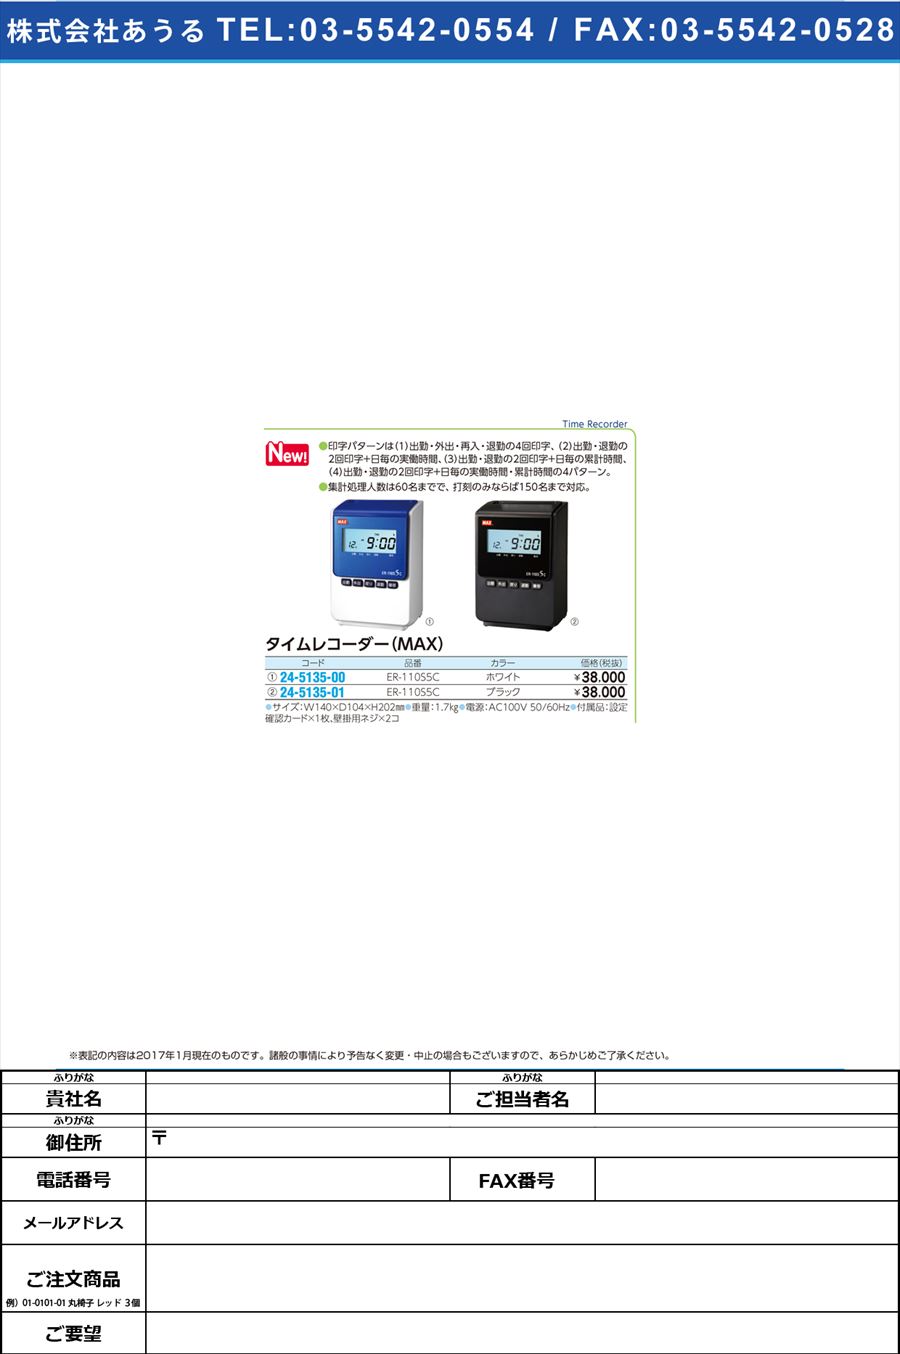 タイムレコーダー ＥＲ−１１０Ｓ５Ｃ MAXﾀｲﾑﾚｺｰﾀﾞｰ ER90165(ﾎﾜｲﾄ)(24-5135-00)【1台単位】【2017年カタログ商品】